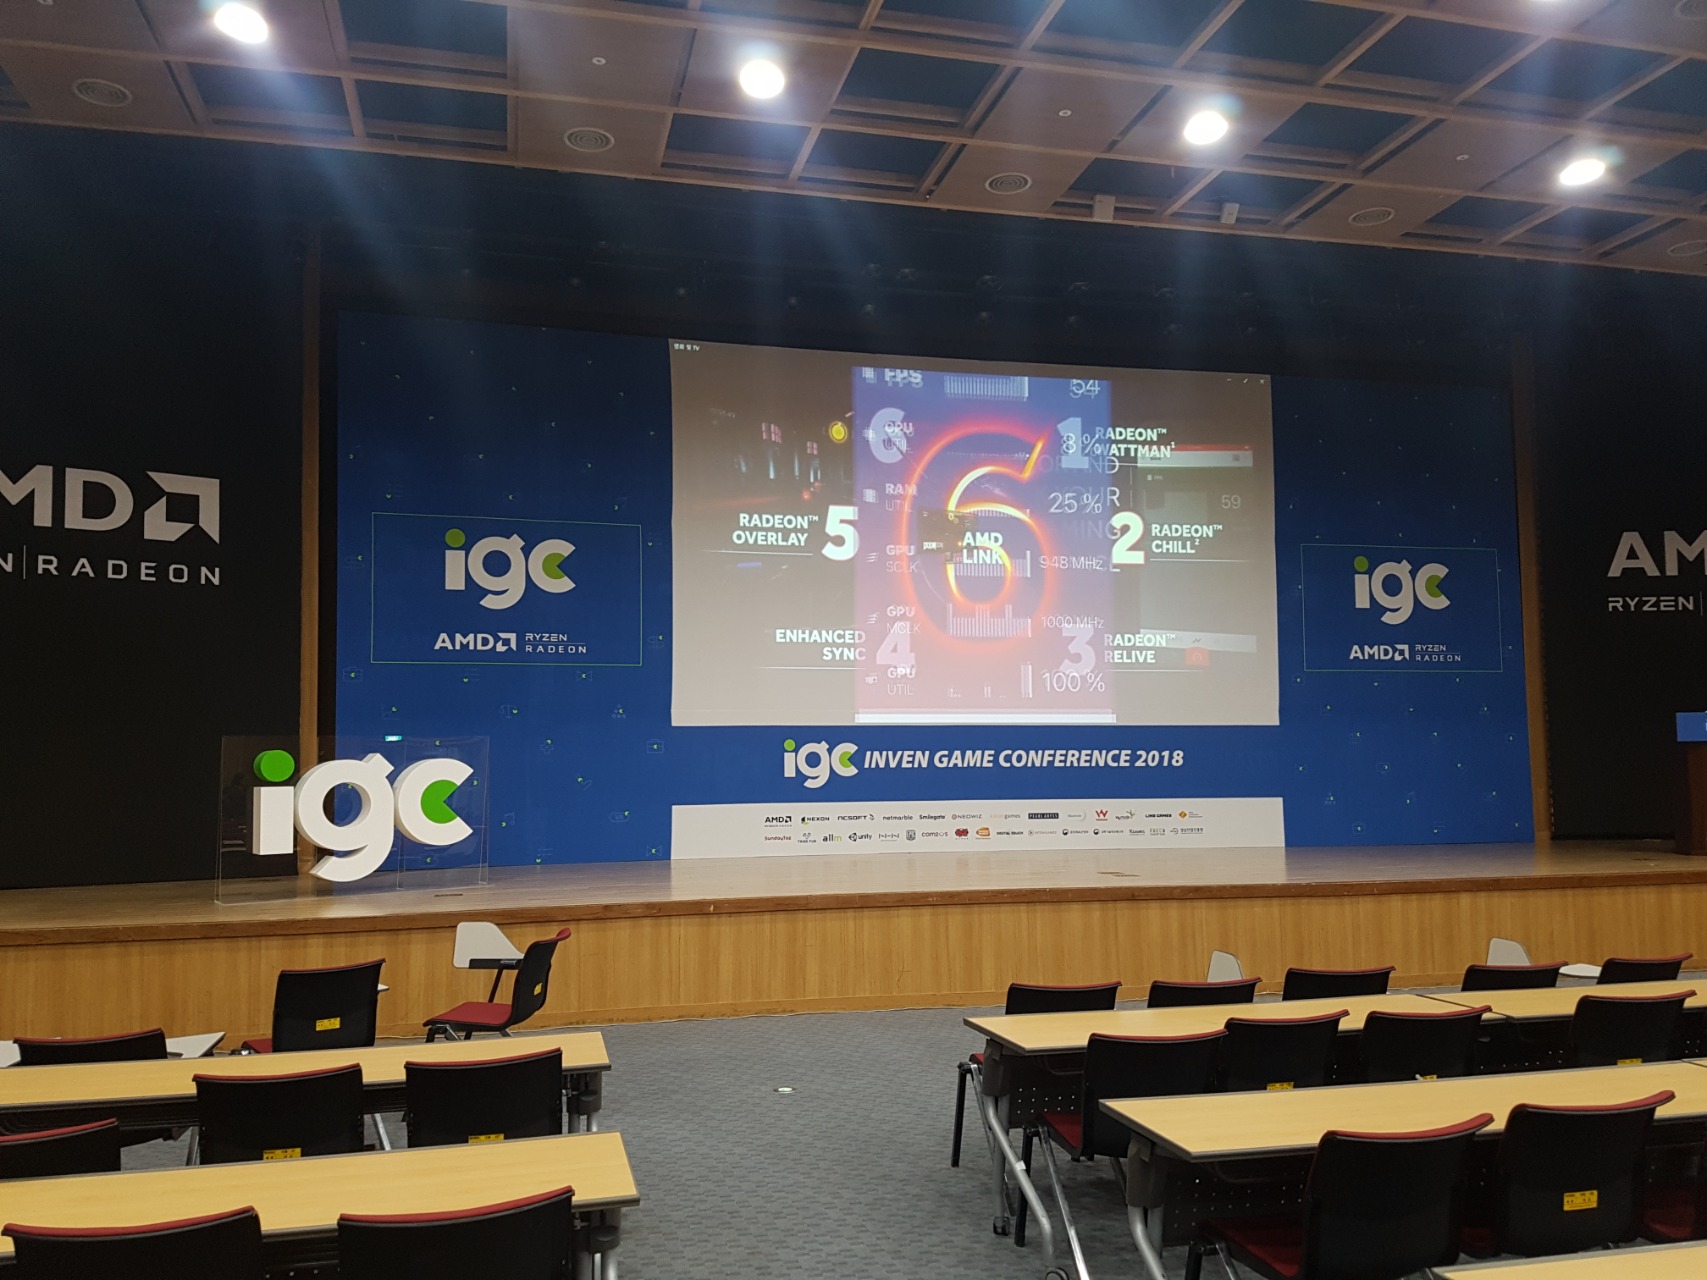 IGC_인벤게임컨퍼런스